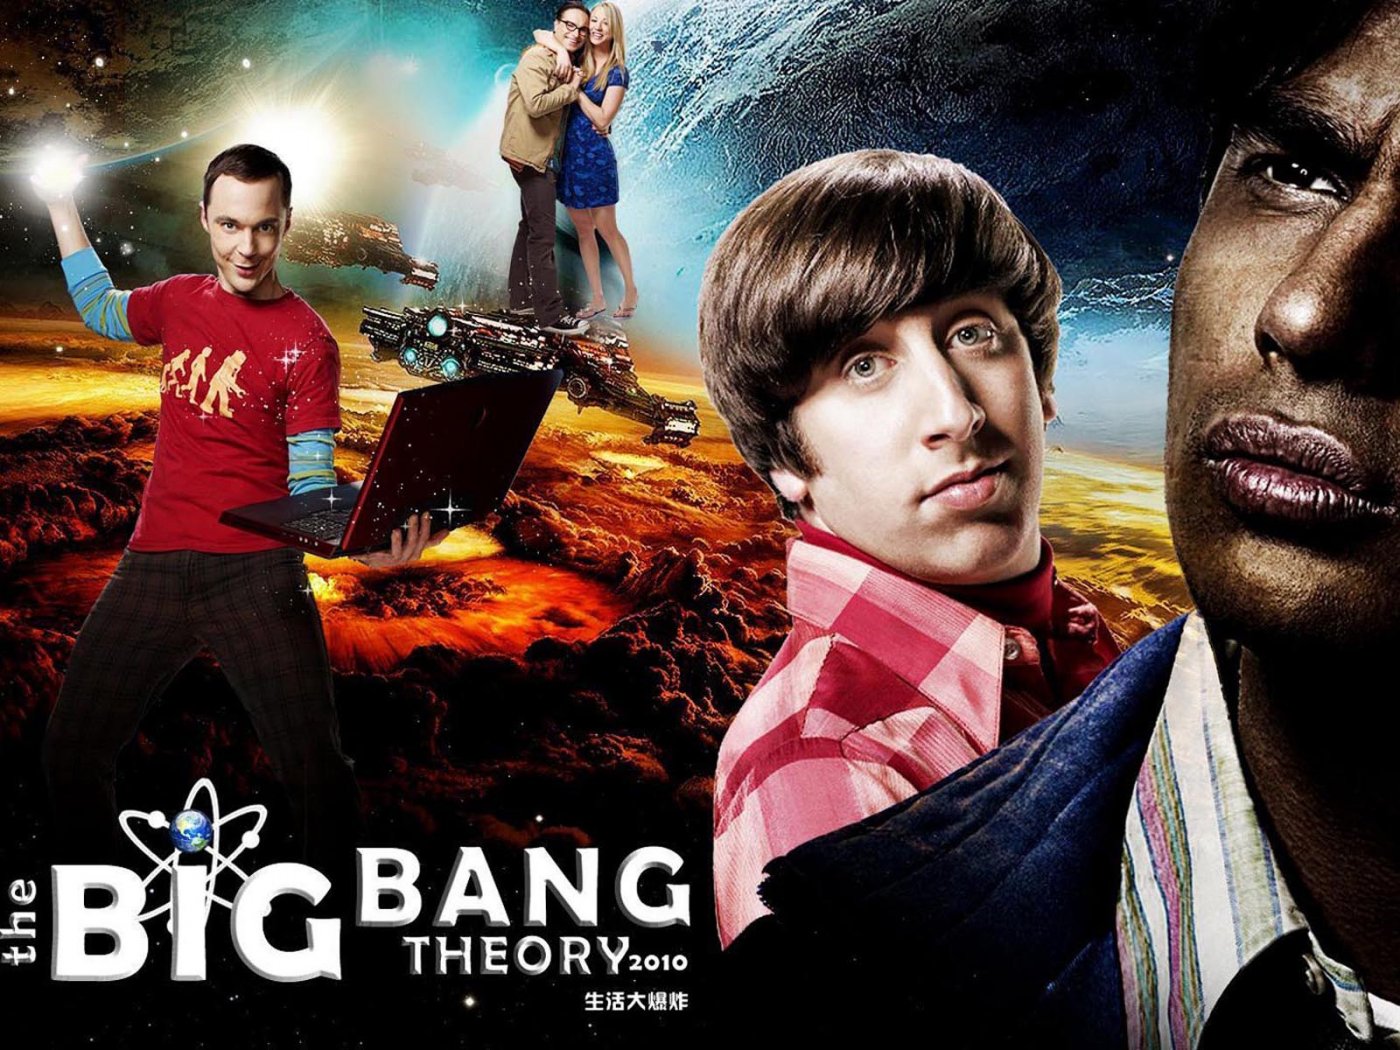 The Big Bang Theory Wallpaper 1400x1050 Wallpapers, 1400x1050